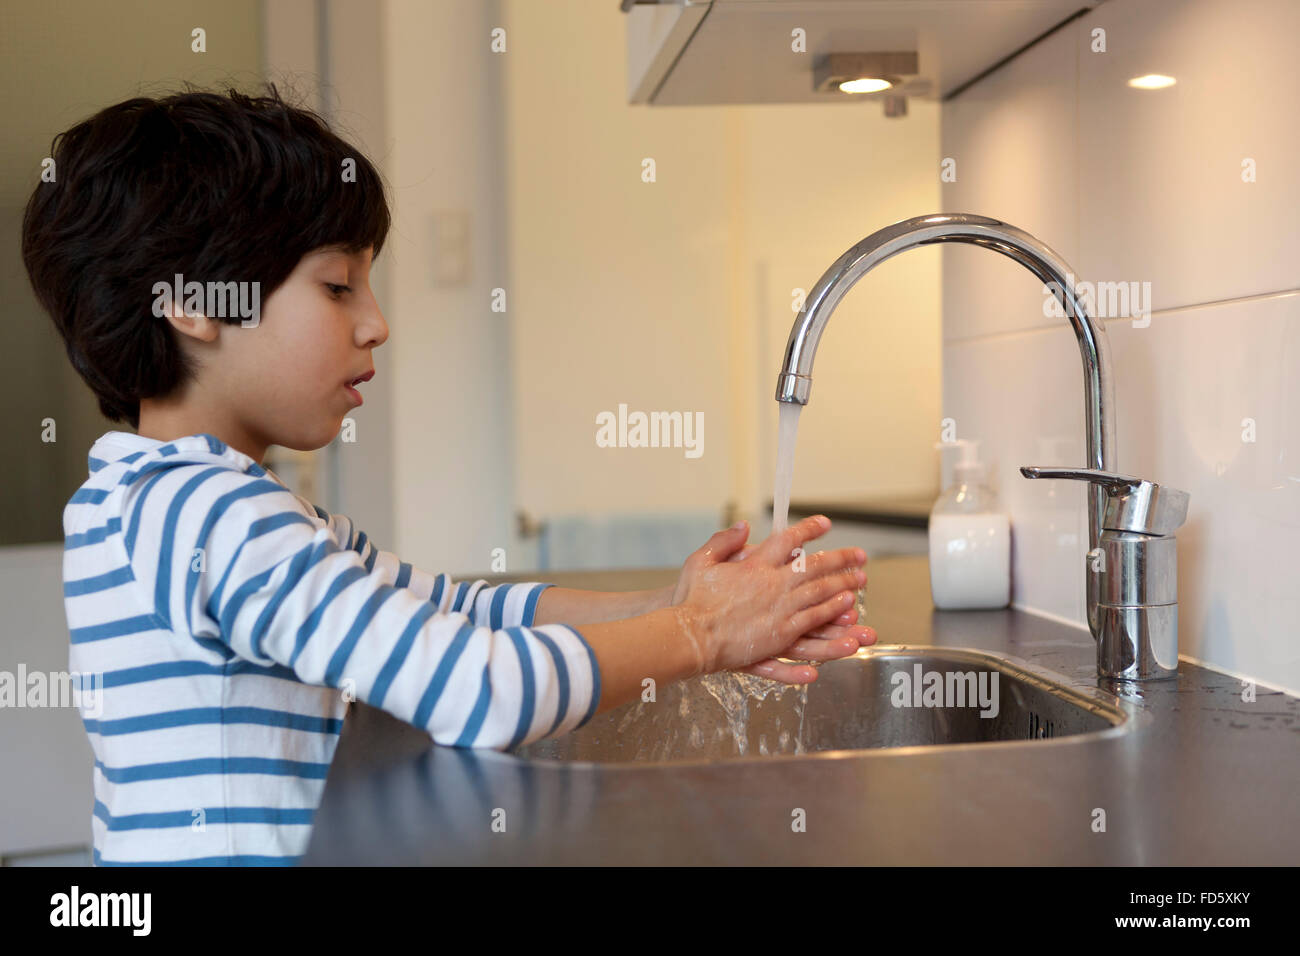 Garçon de huit ans, se laver les mains dans la cuisine Banque D'Images